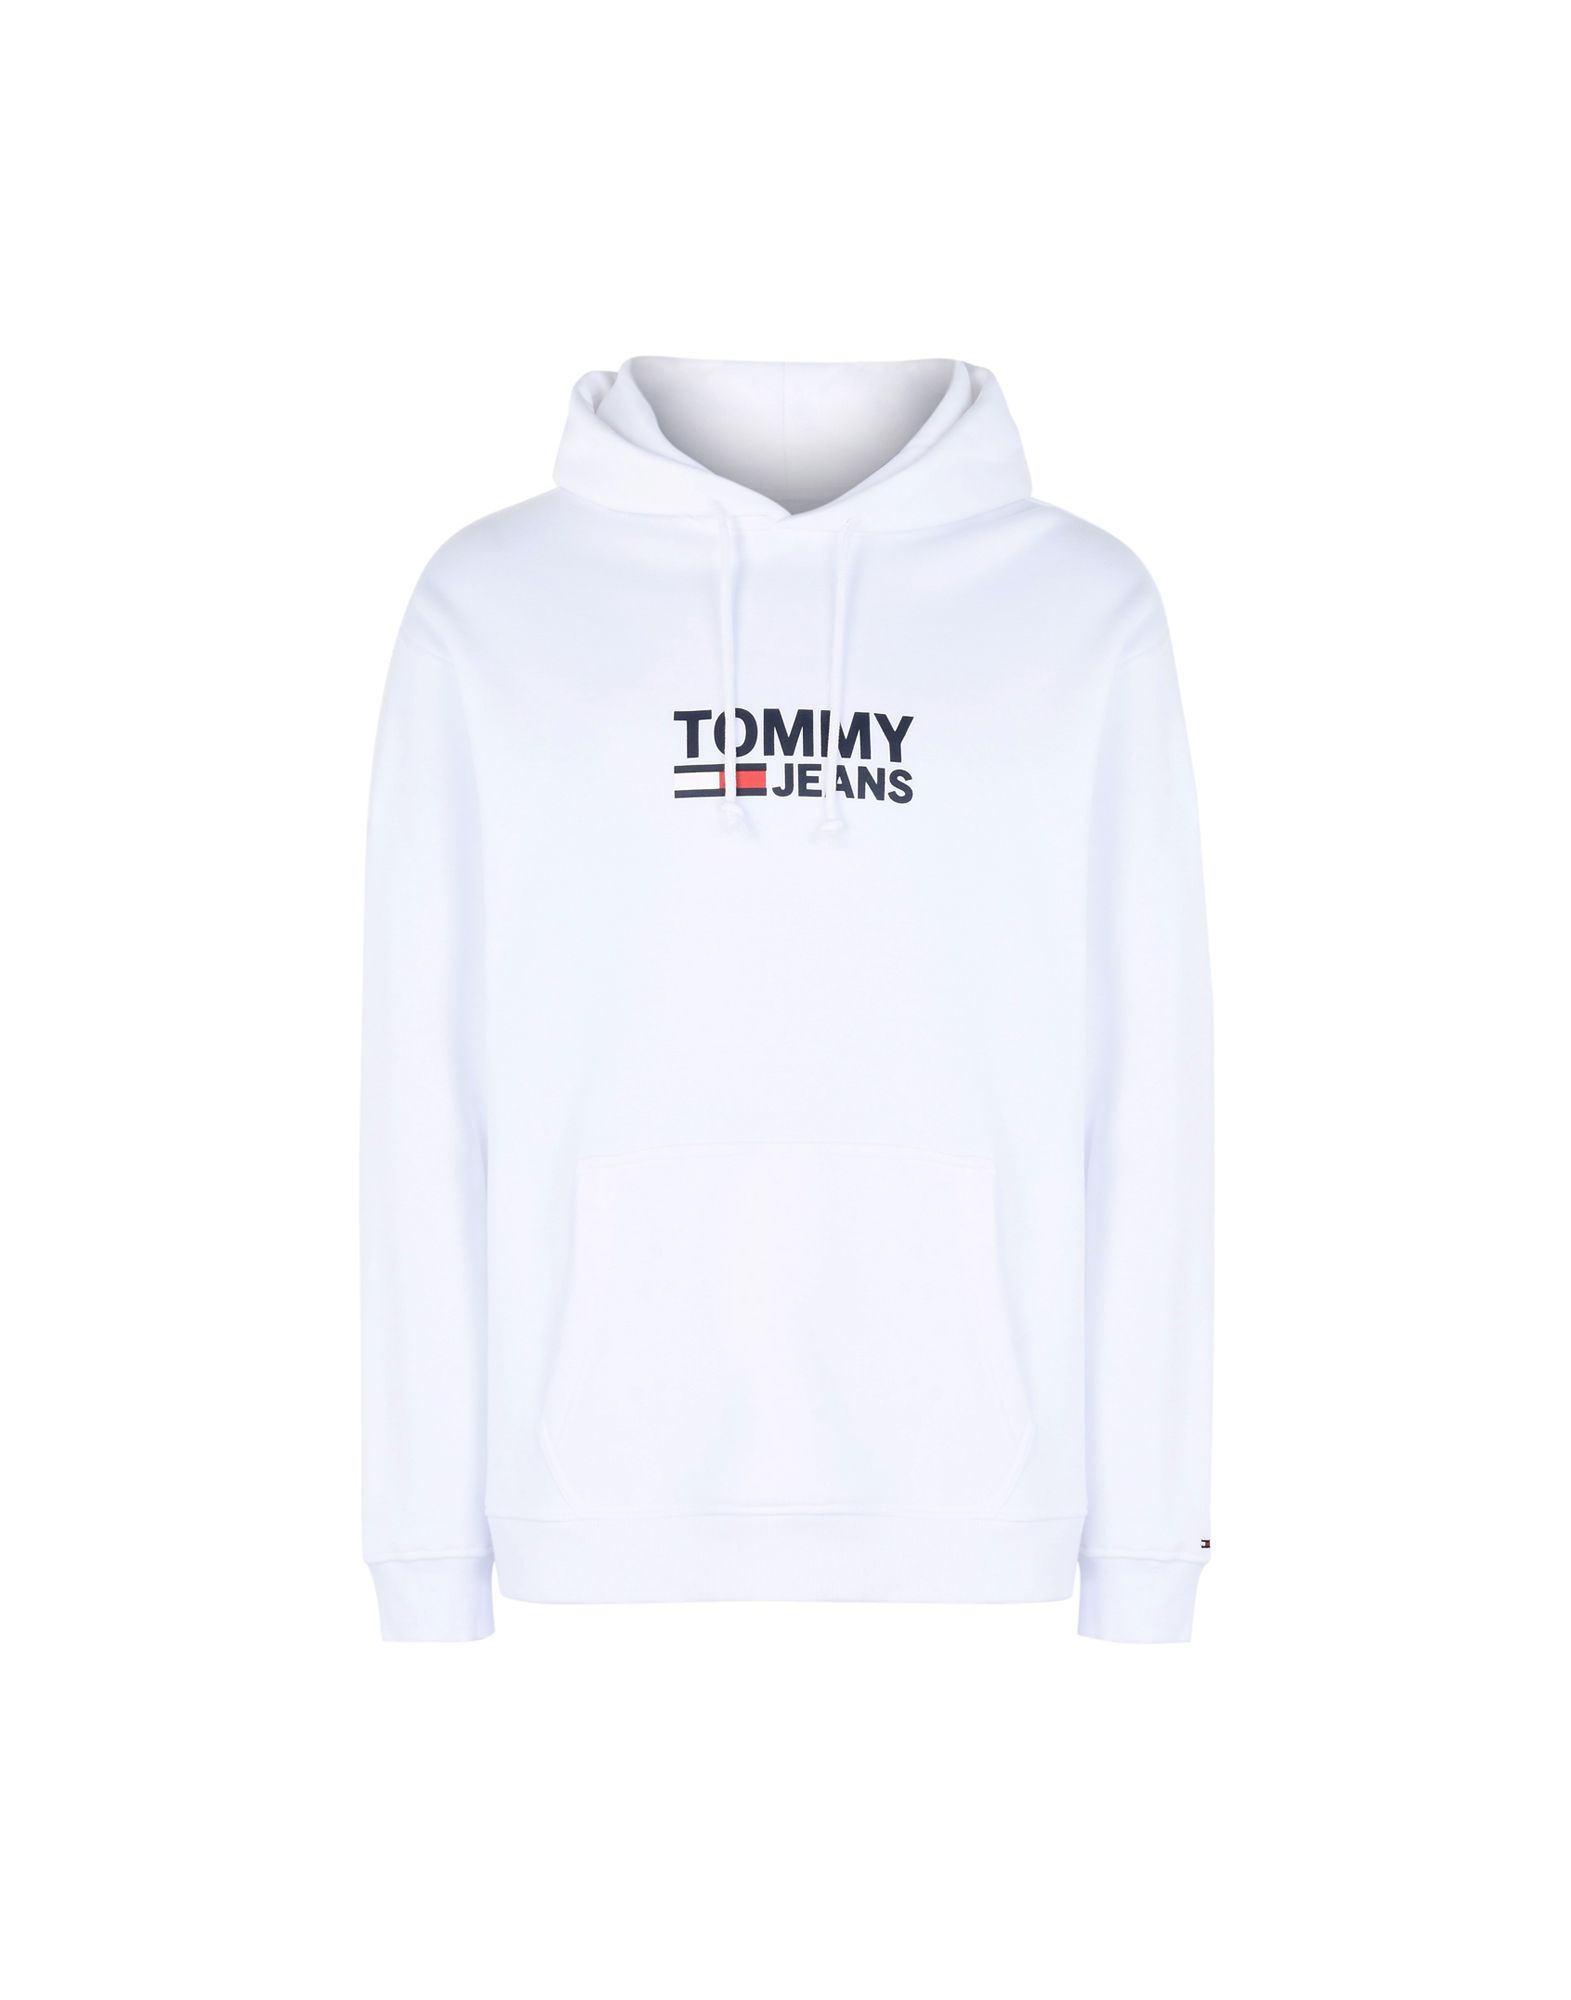 TOMMY JEANS Hooded sweatshirt,12203823TJ 7